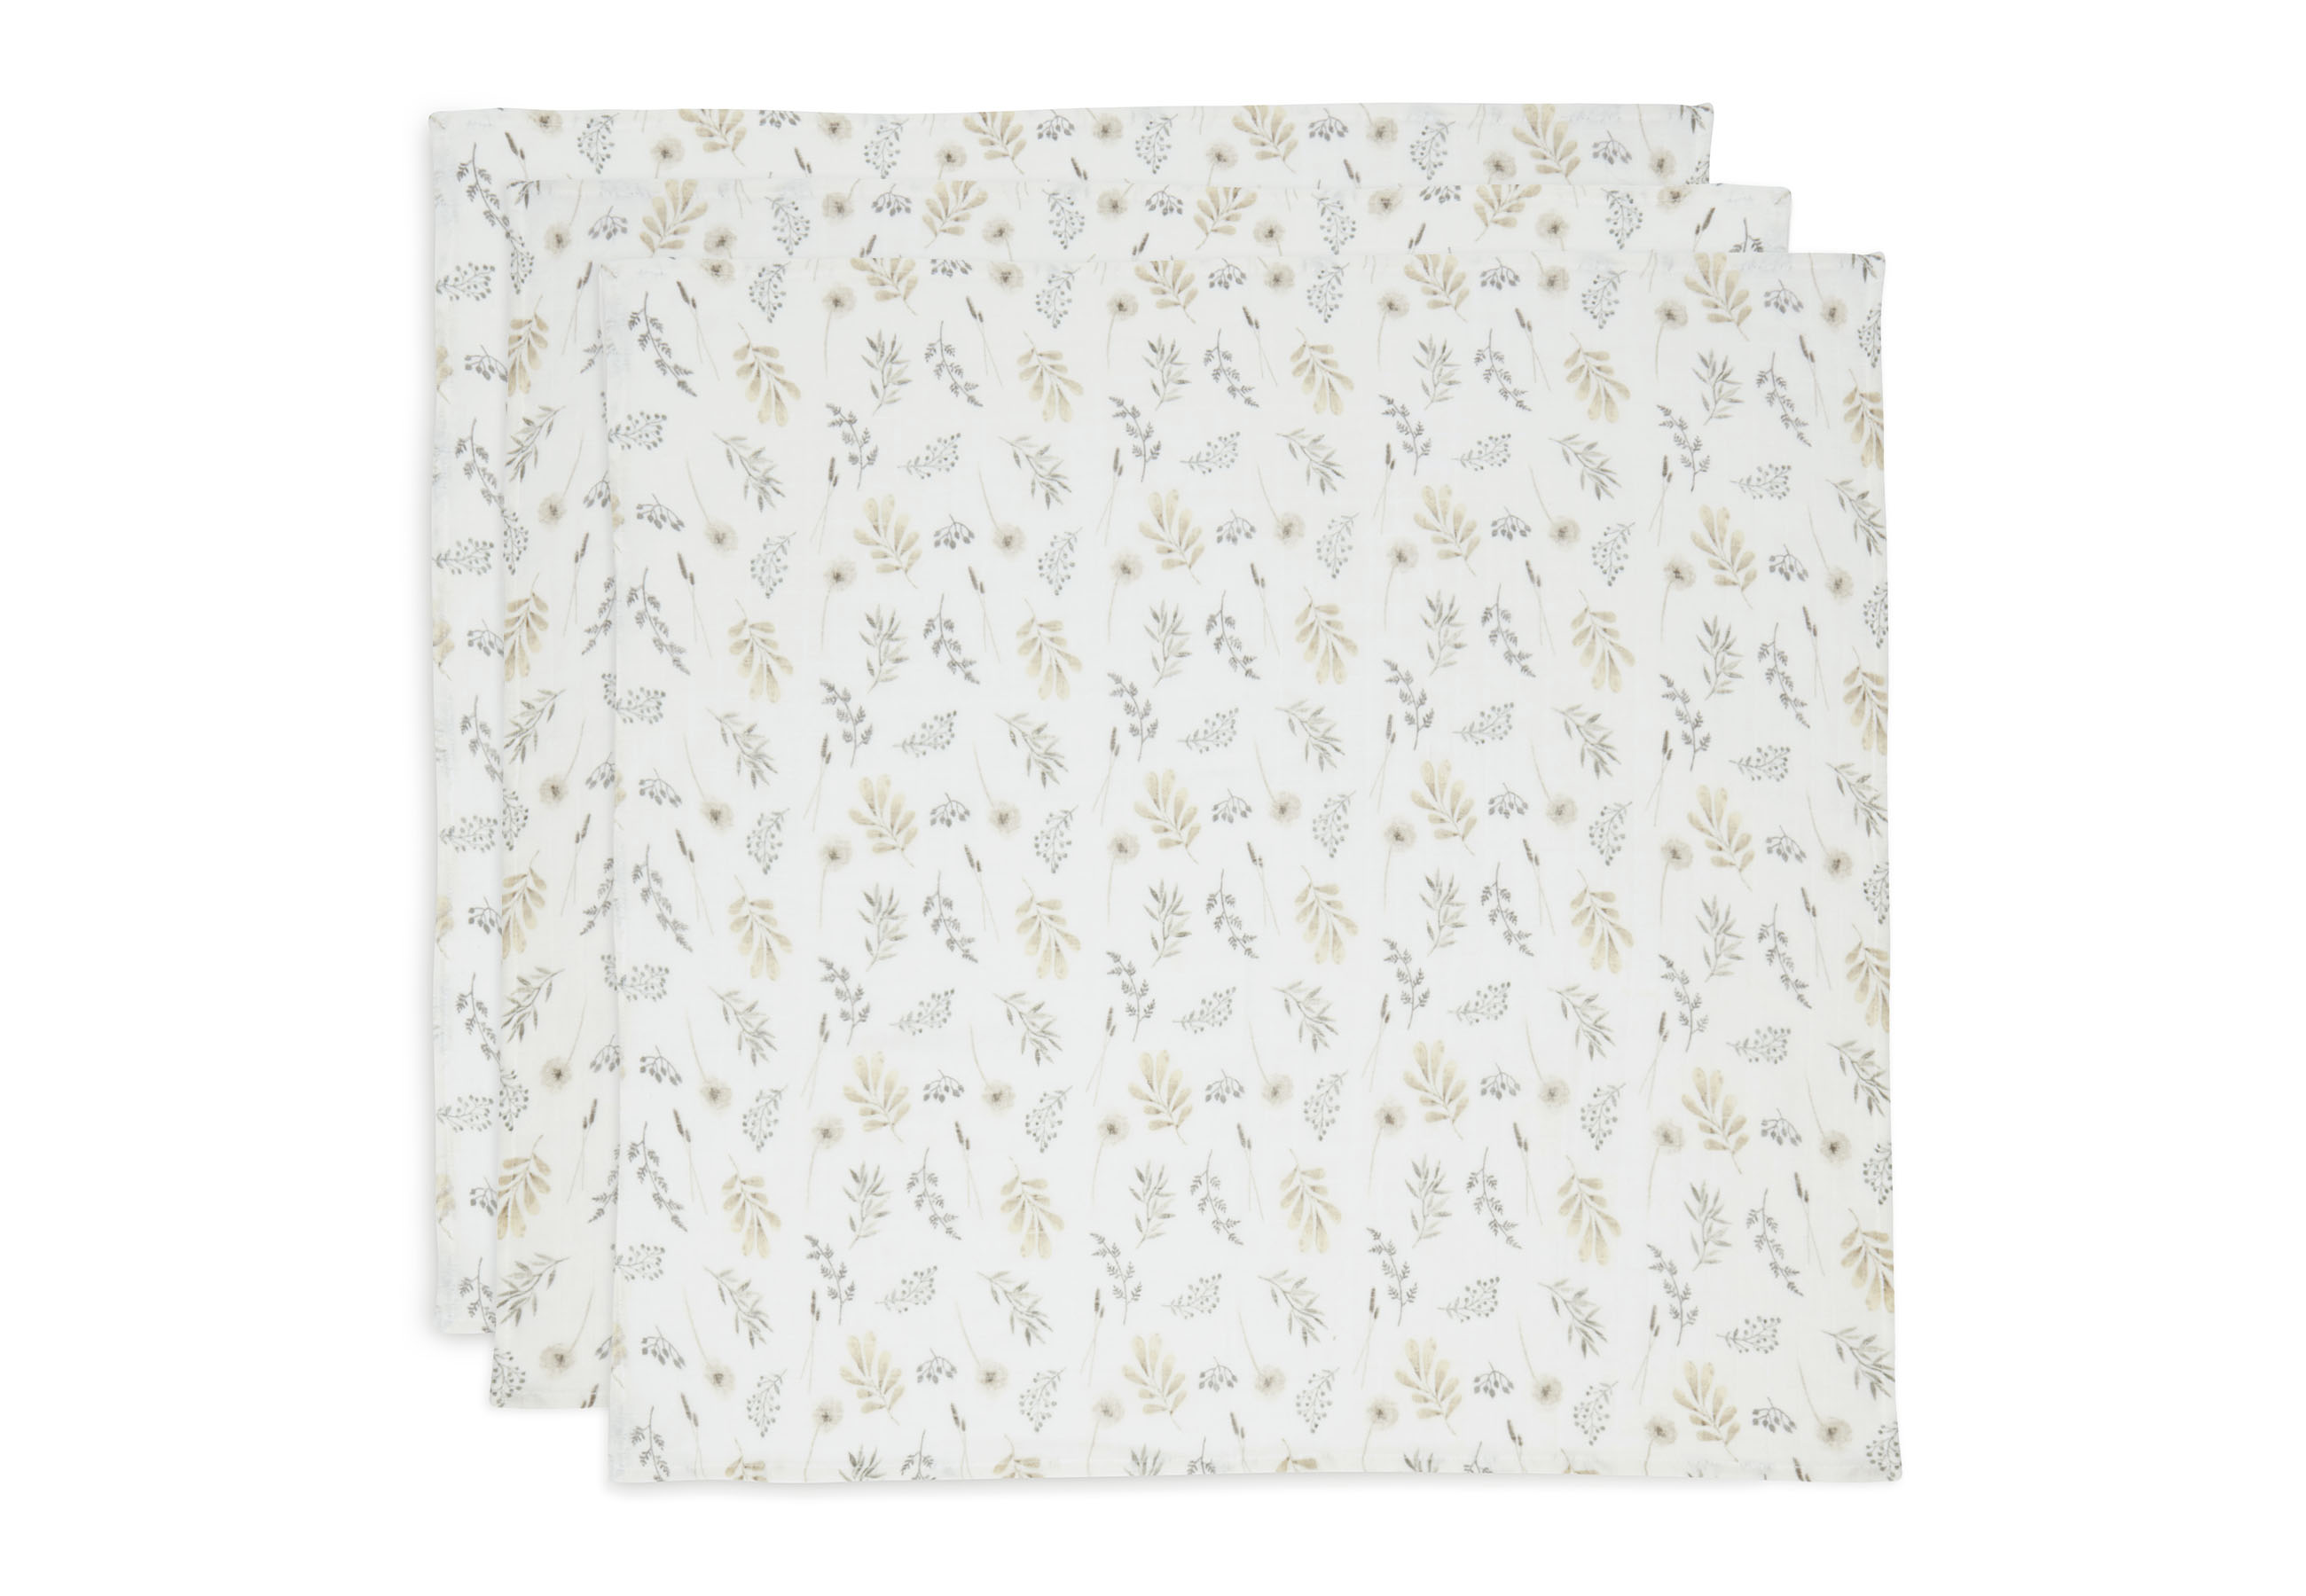 Mulltücher 3er Set Wild Flowers / Wilde Blumen weiß (70x70 cm)